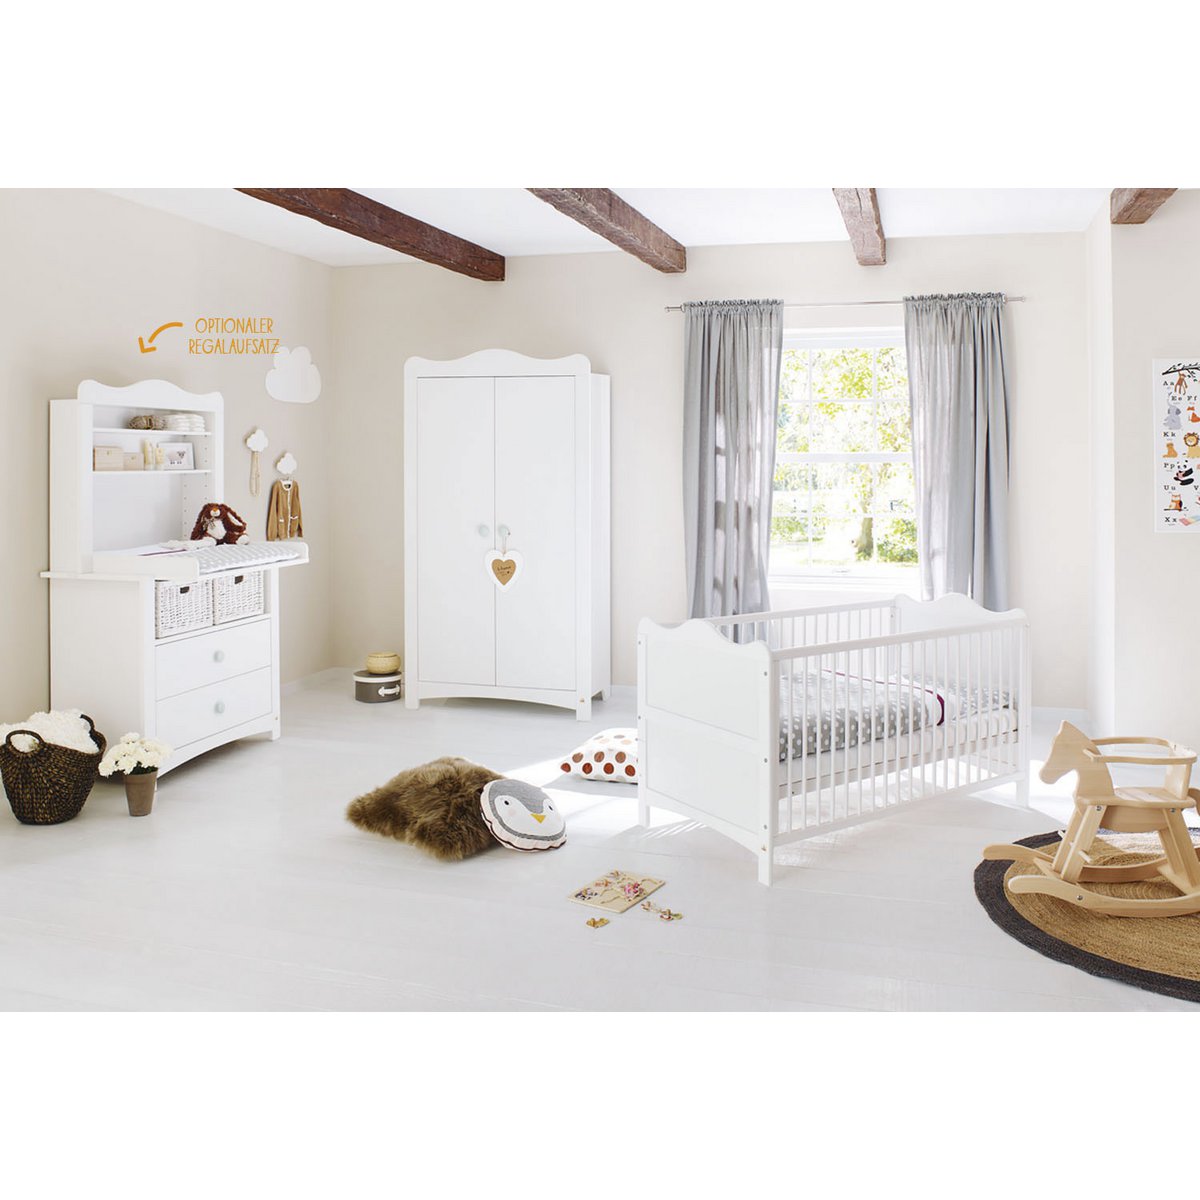 Baumschule 'Florentina' breit, inkl. breite Regaleinheit
4-teilig: Kinderbett, breite Wickelkommode, breites Regal, 2-türiger Kleiderschrank